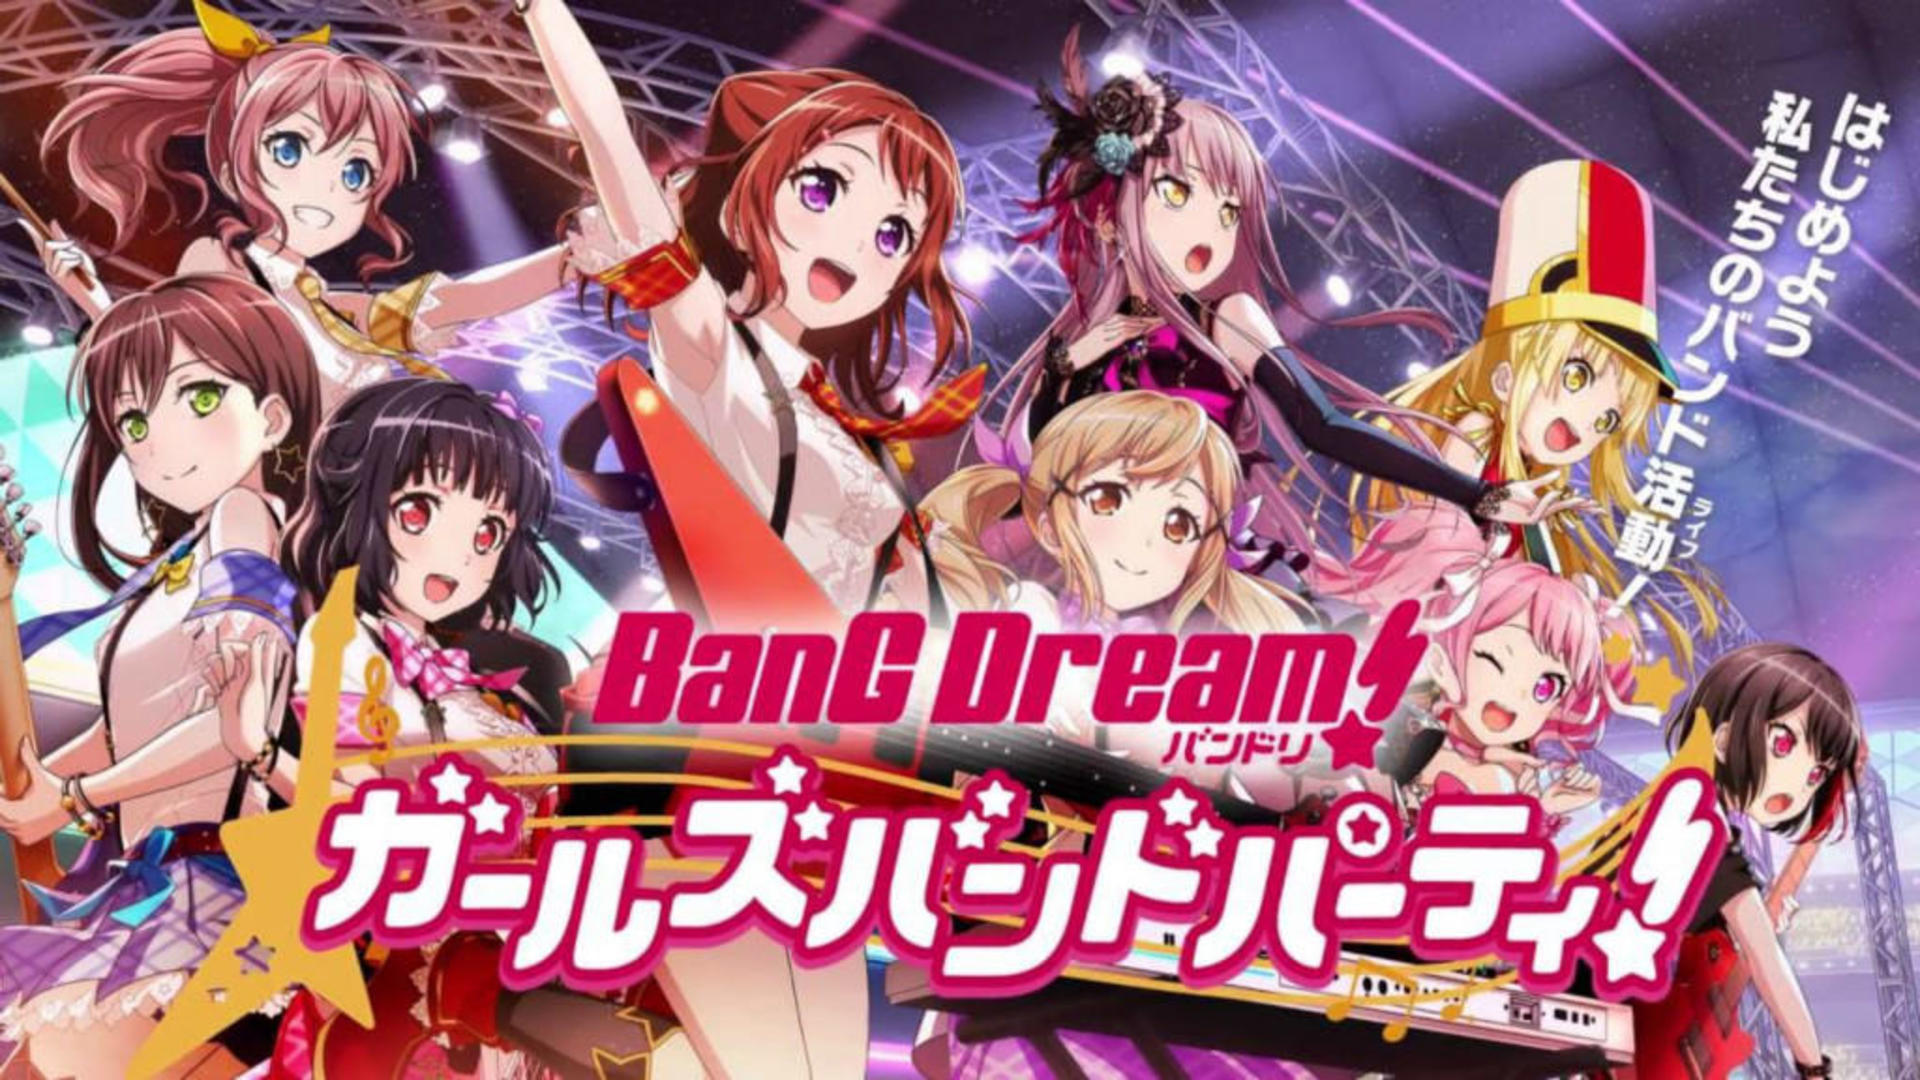 Banner of बैंग ड्रीम! लड़कियों की बैंड पार्टी! 8.1.0